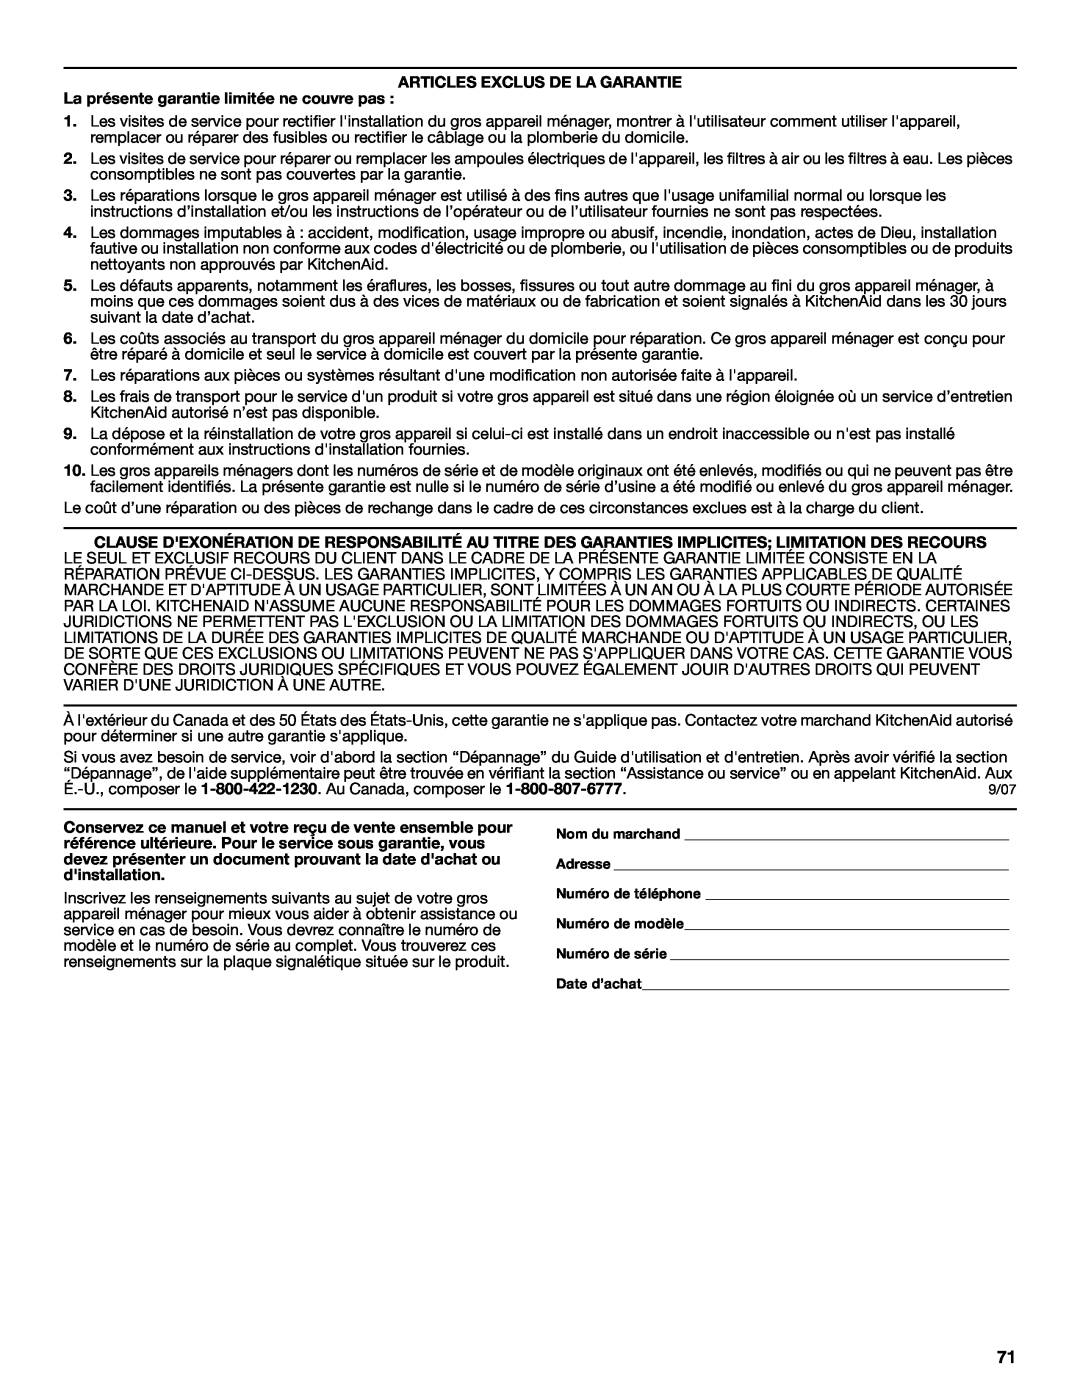 KitchenAid KEHU309 manual Articles Exclus De La Garantie, La présente garantie limitée ne couvre pas 